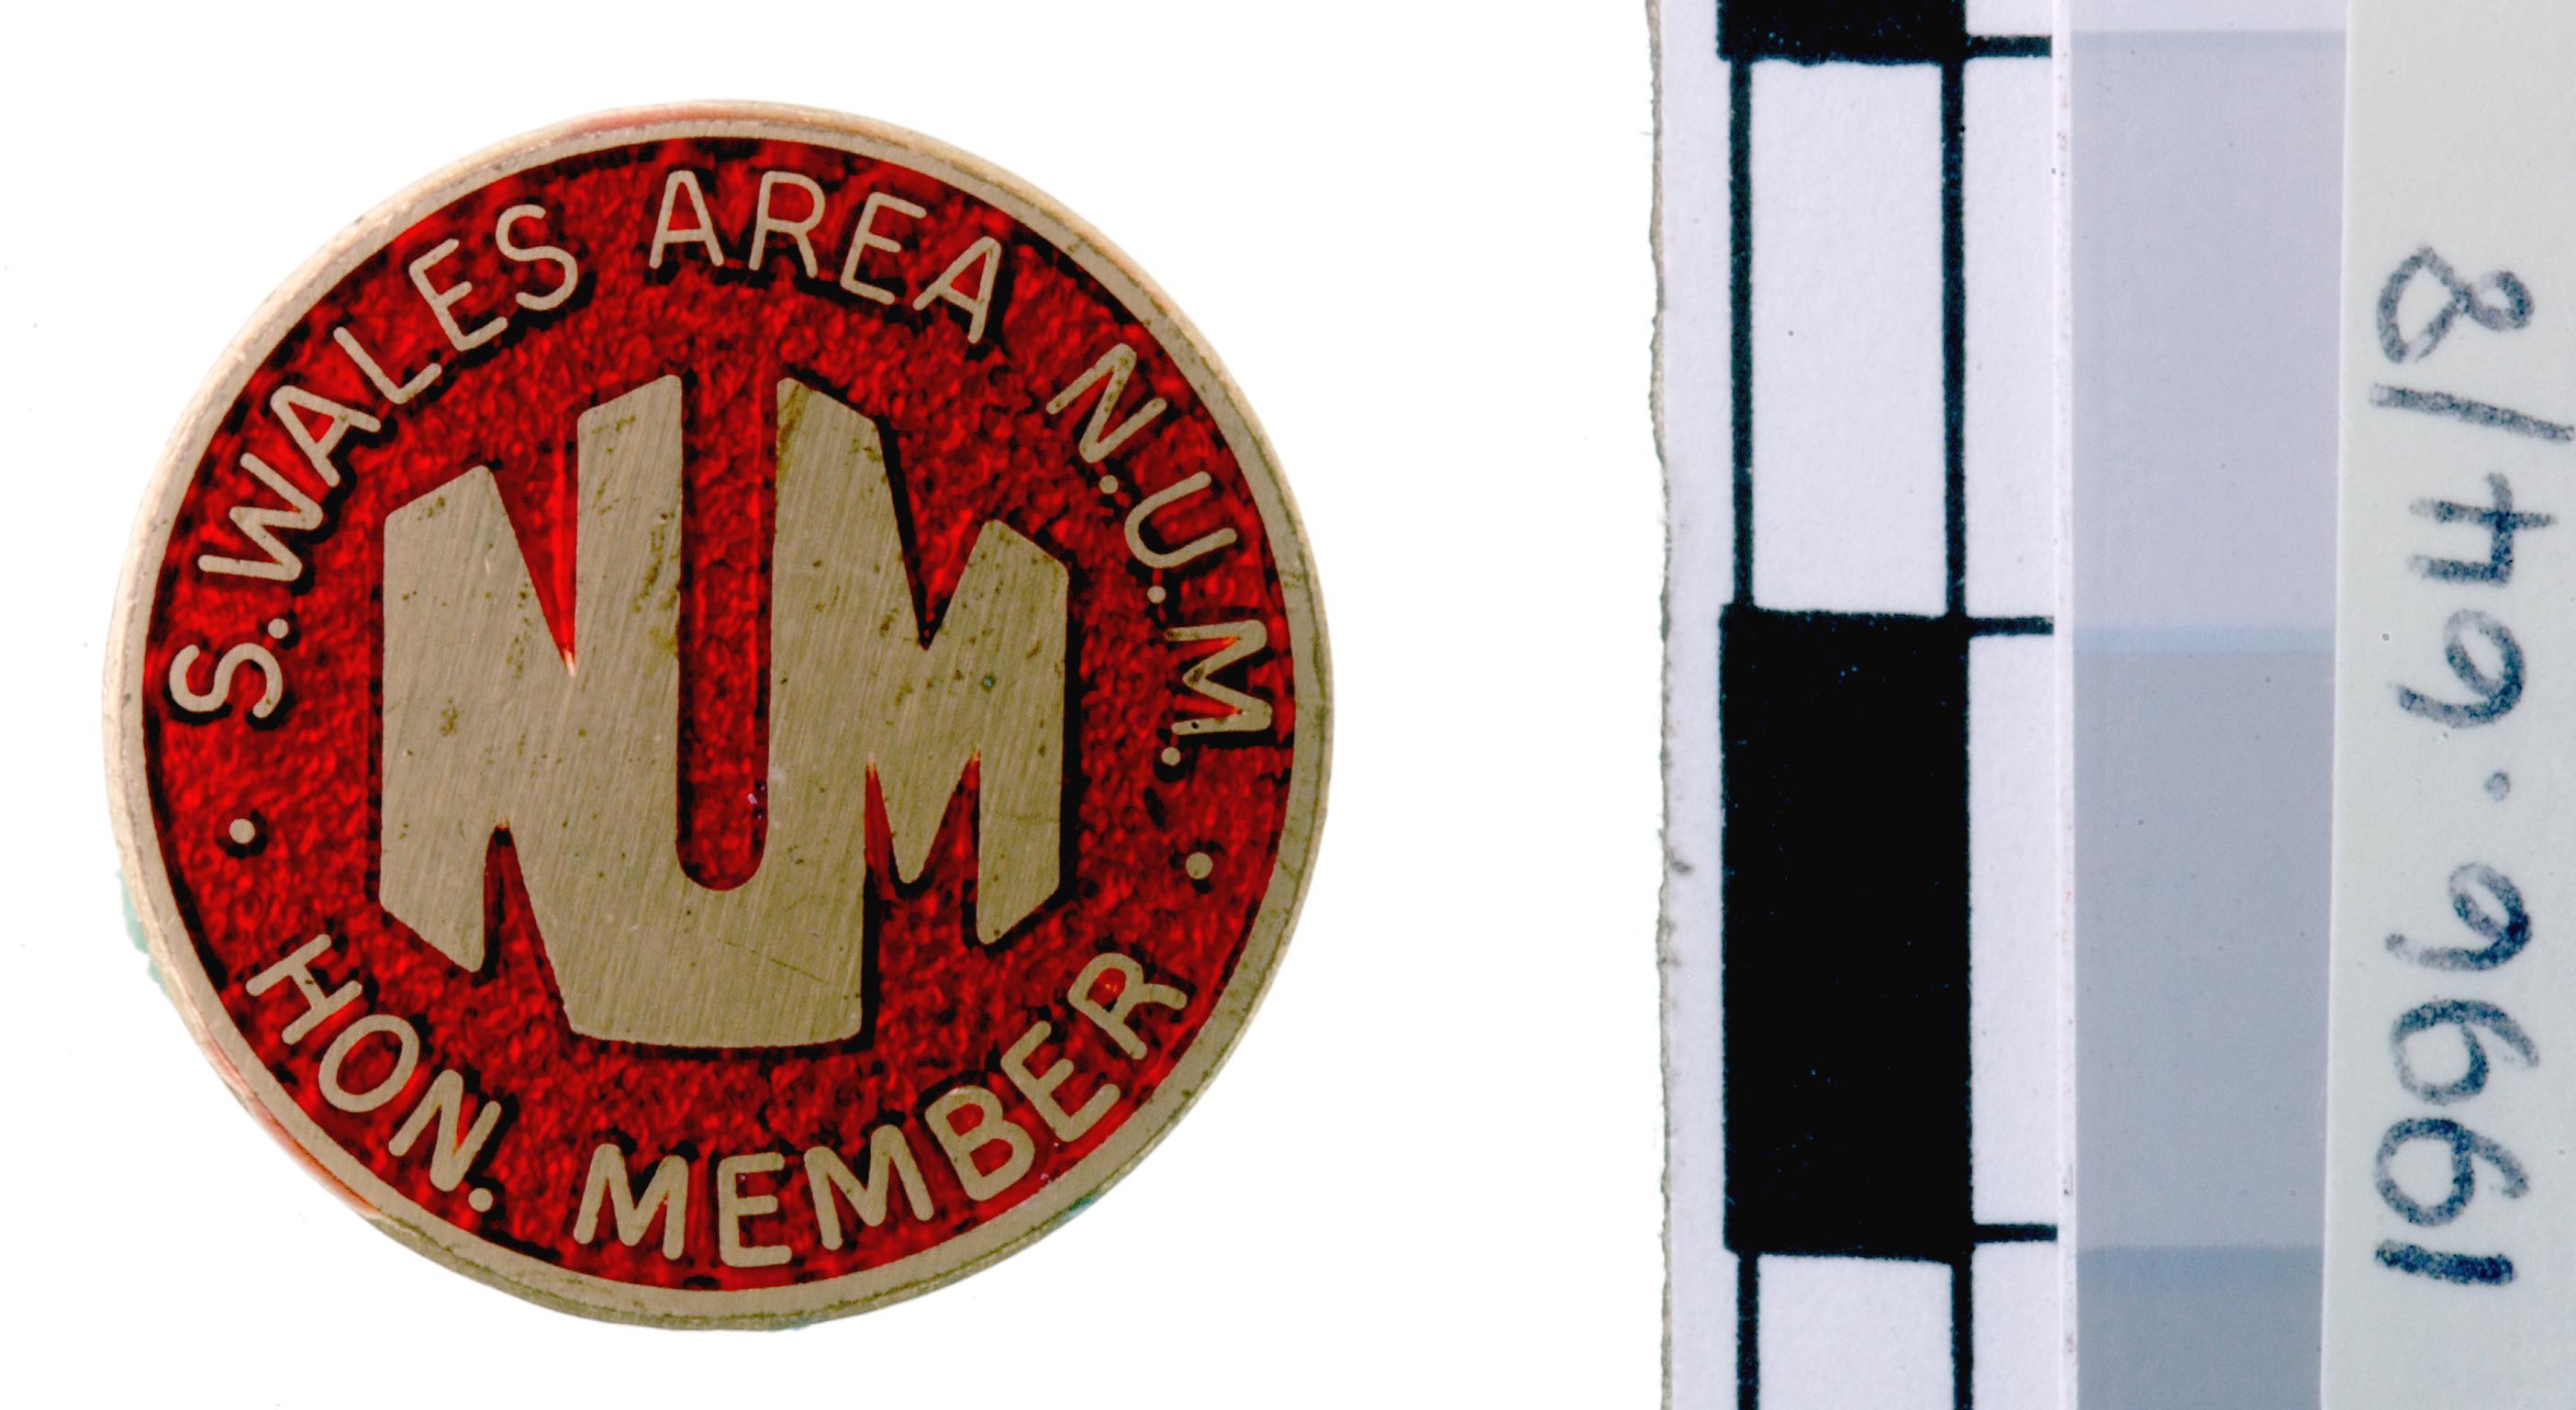 N.U.M. Hon. Member, badge